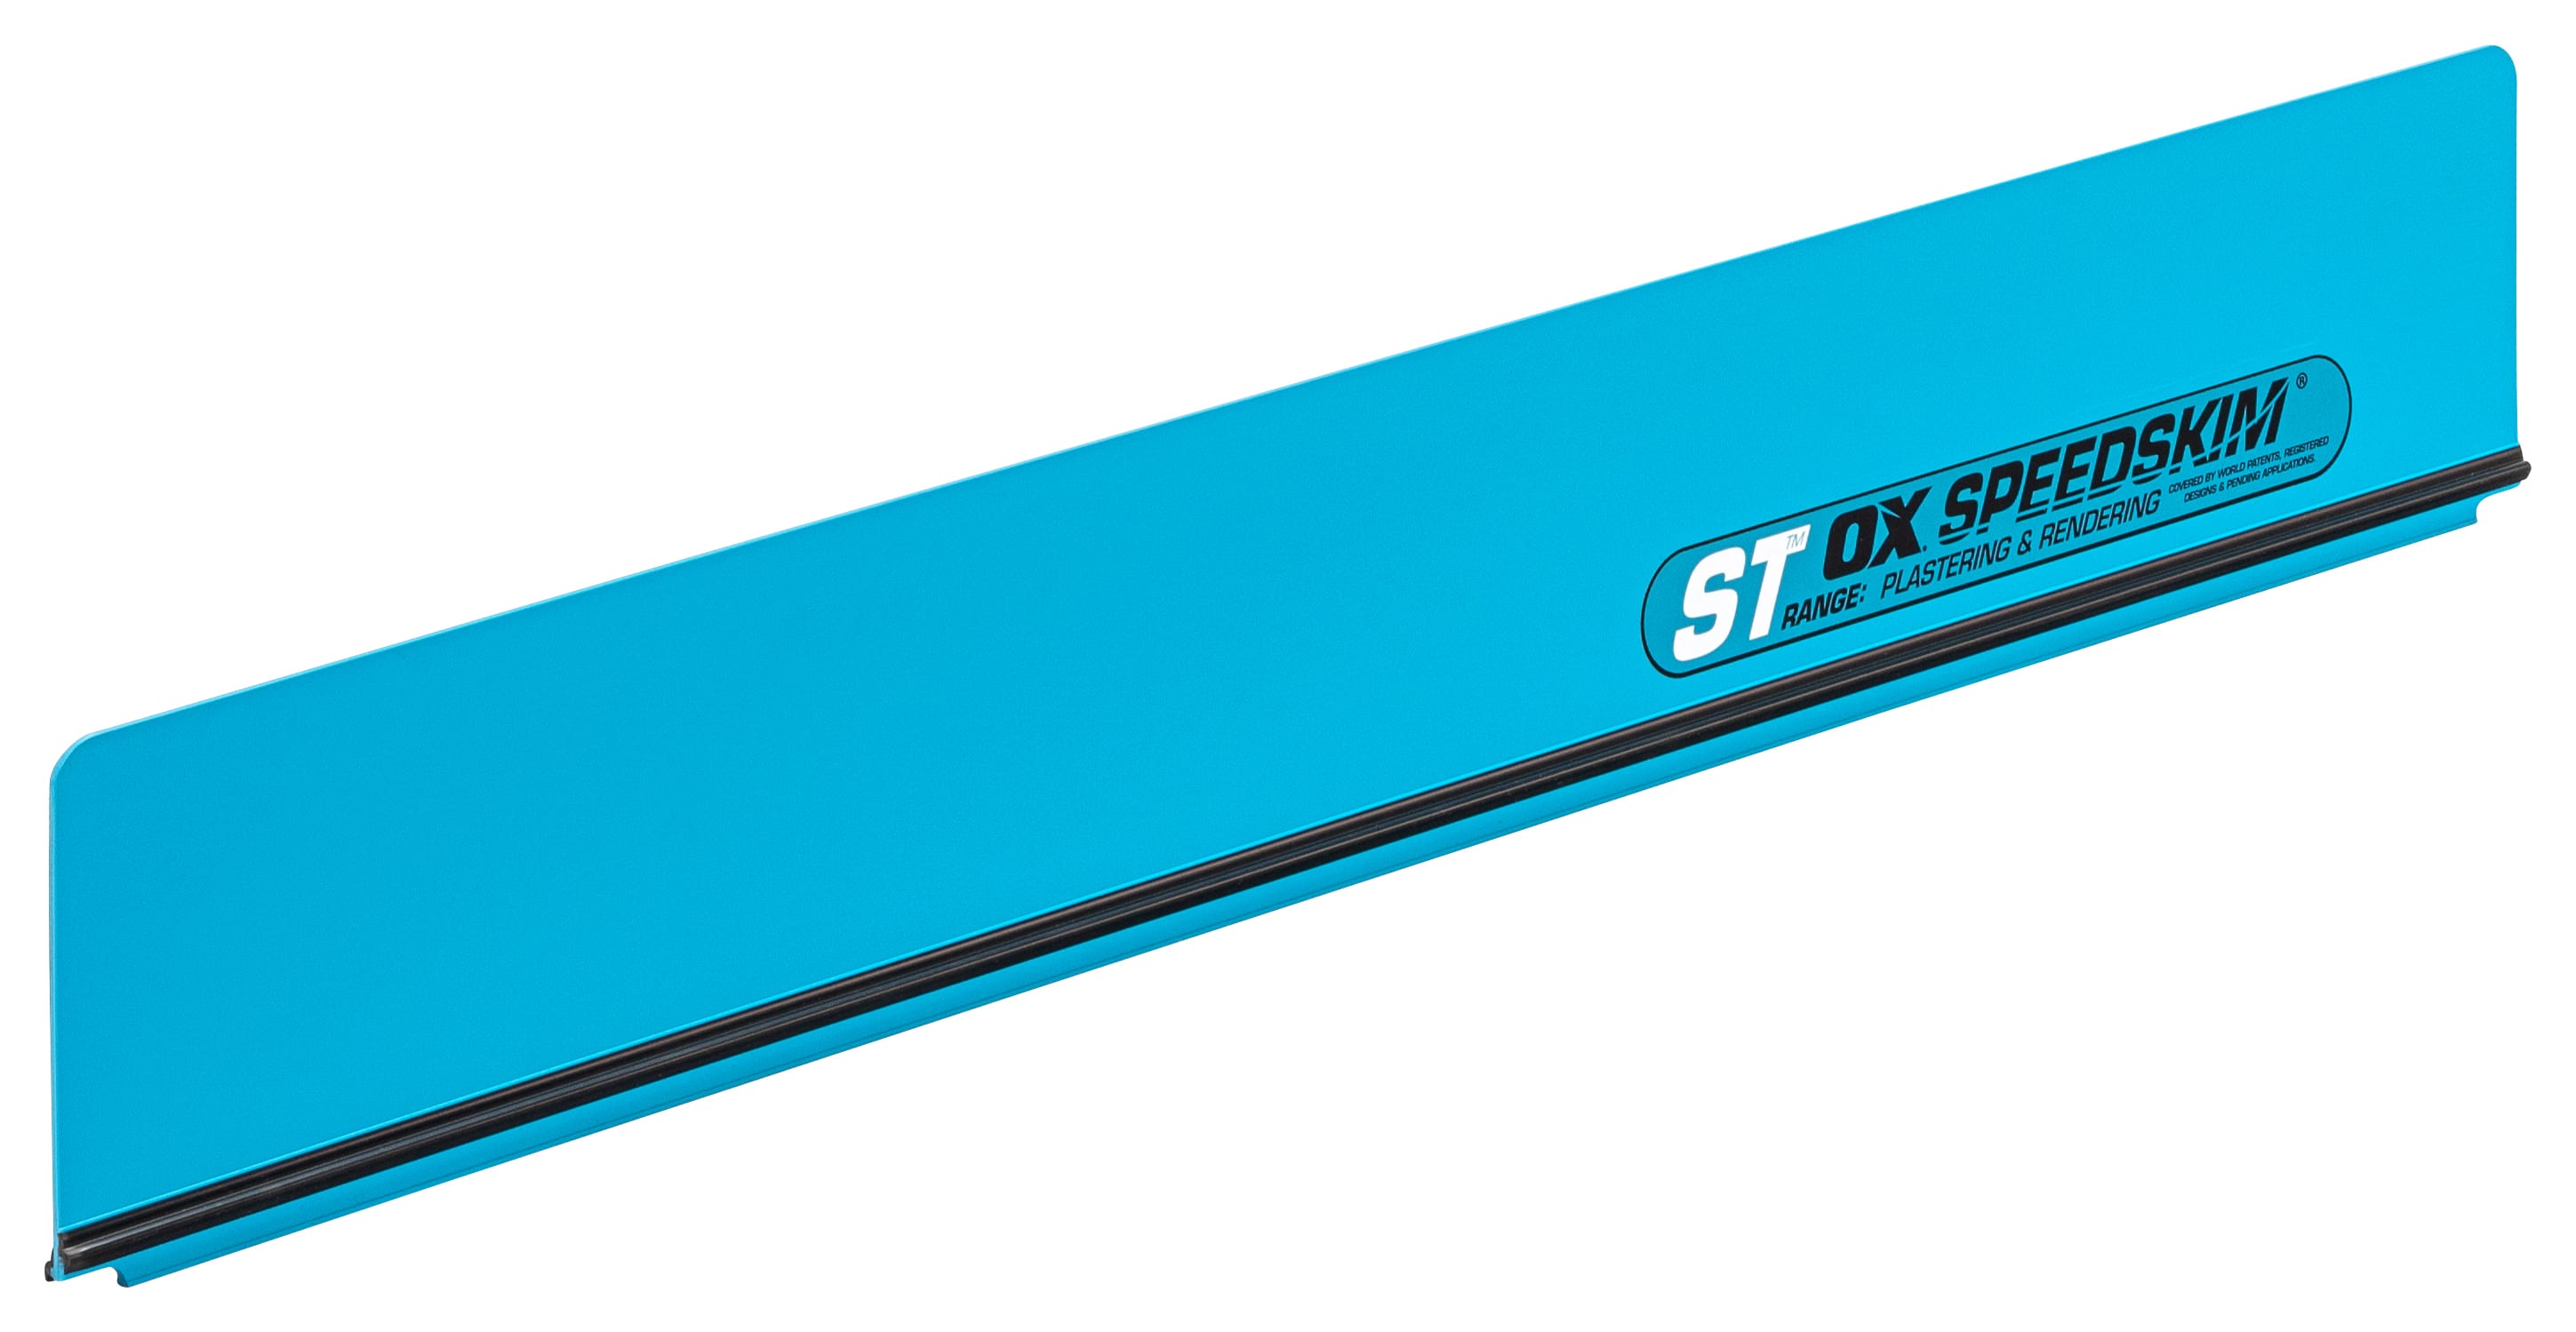 OX P531260 Speedskim Semi Flex Replacement Blade -